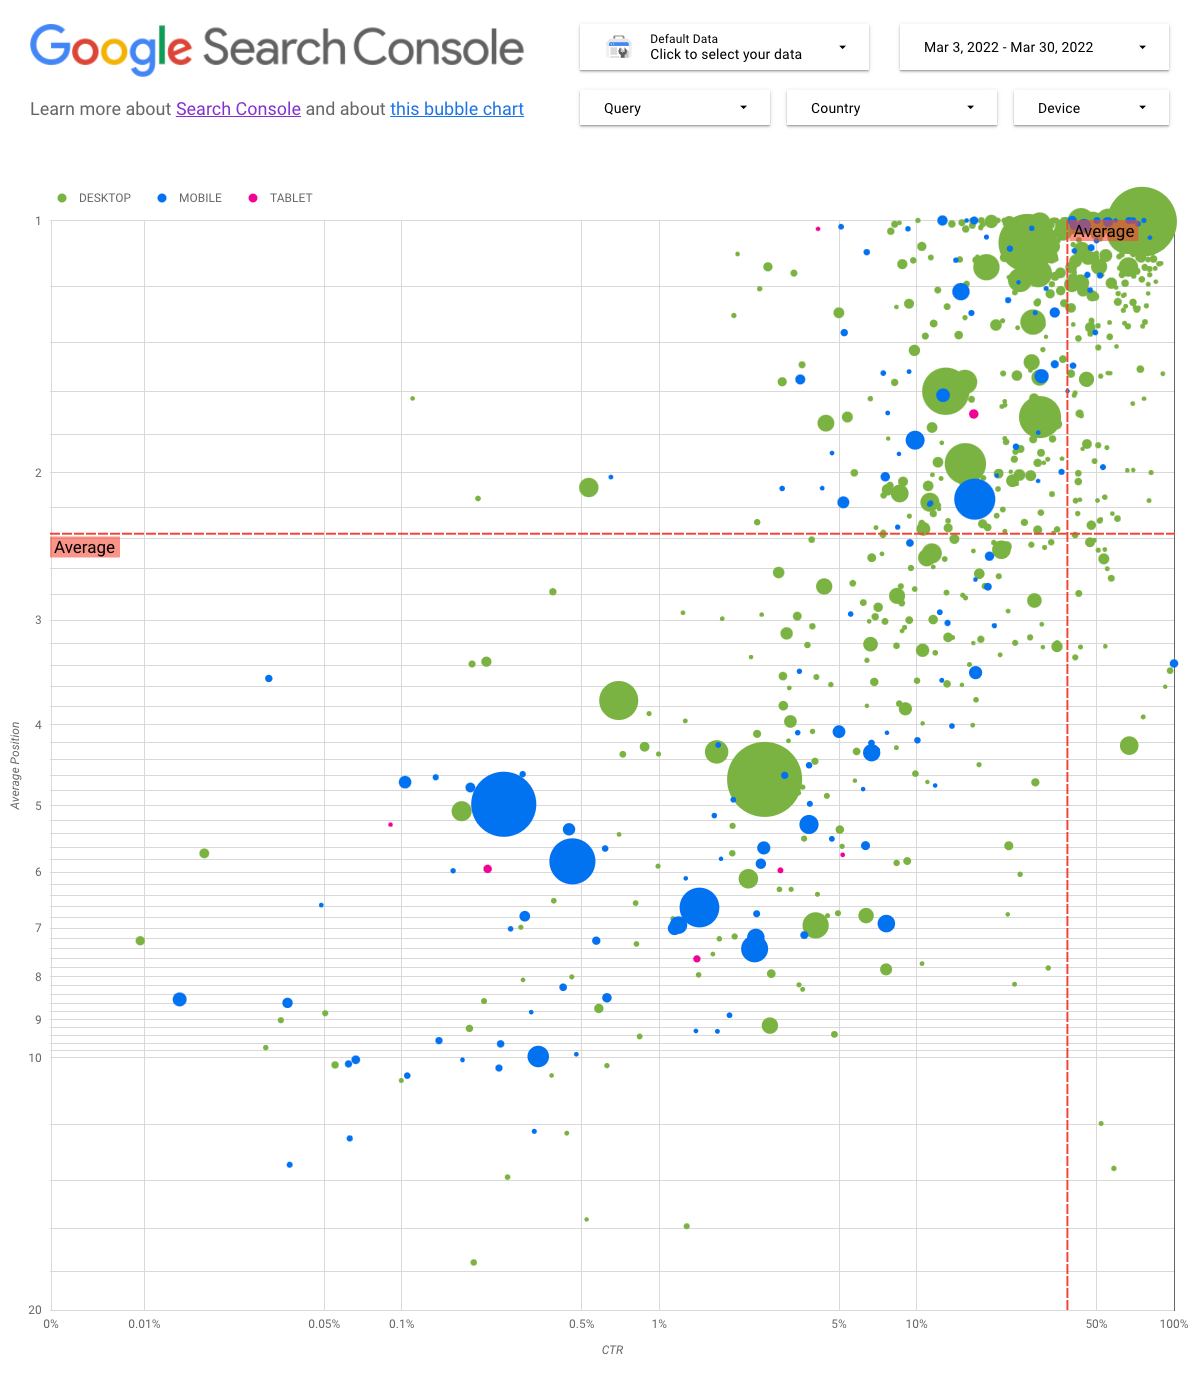 Relatório do Data Studio mostrando um gráfico de bolhas com dados do Search Console